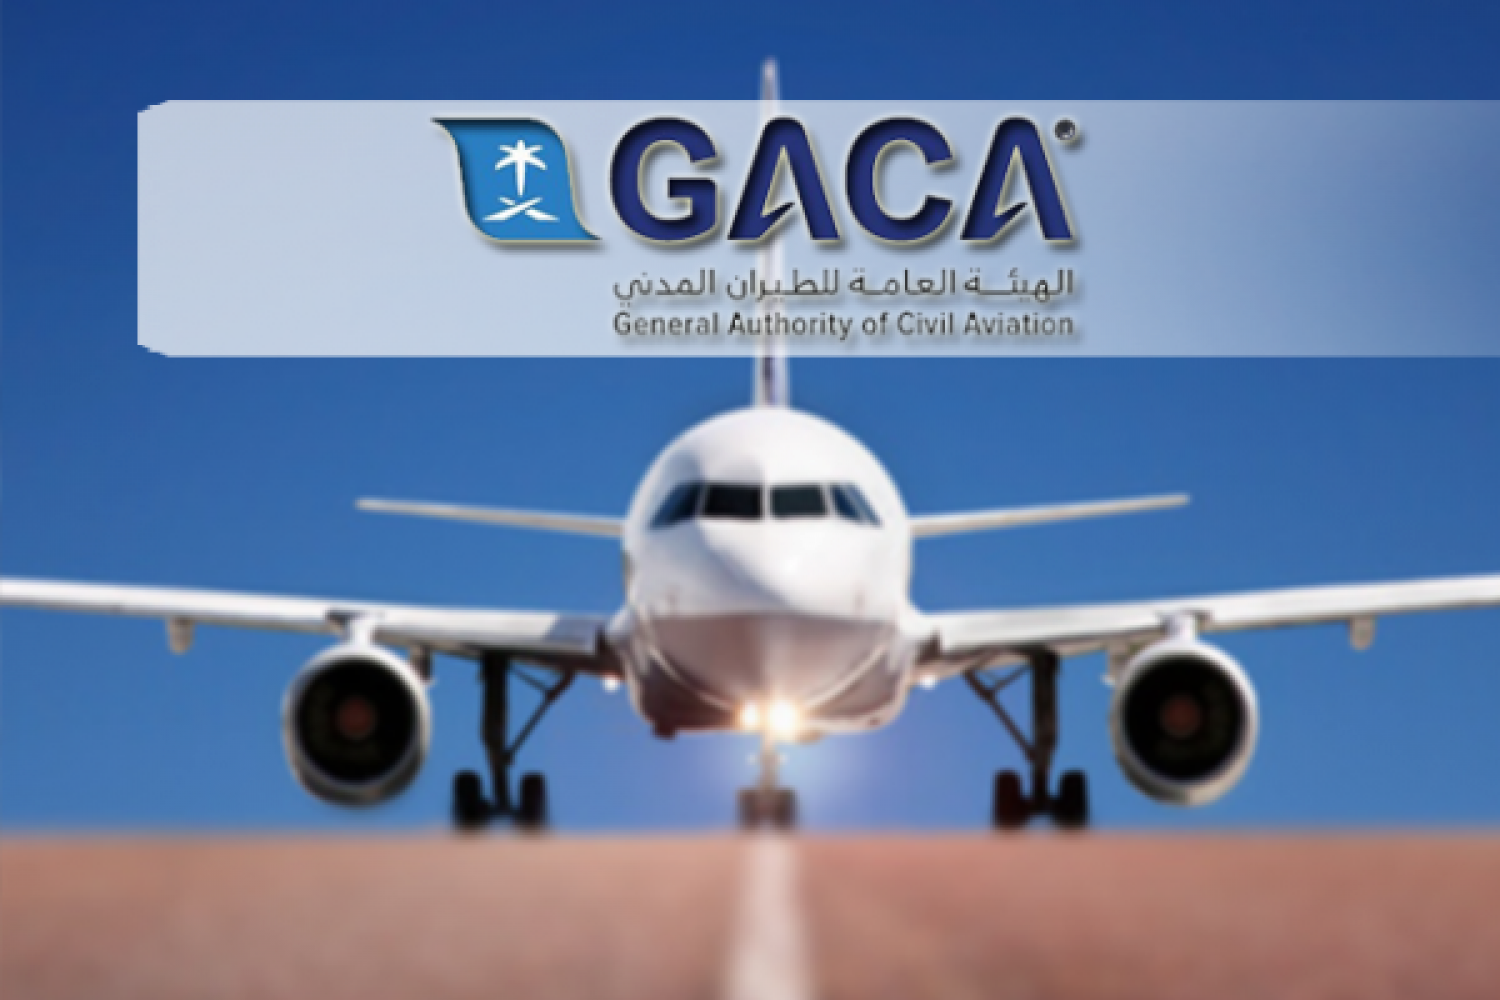 الطيران المدني: تطبيق توكلنا شرط أساسي لدخول المطارات وصعود الطائرات